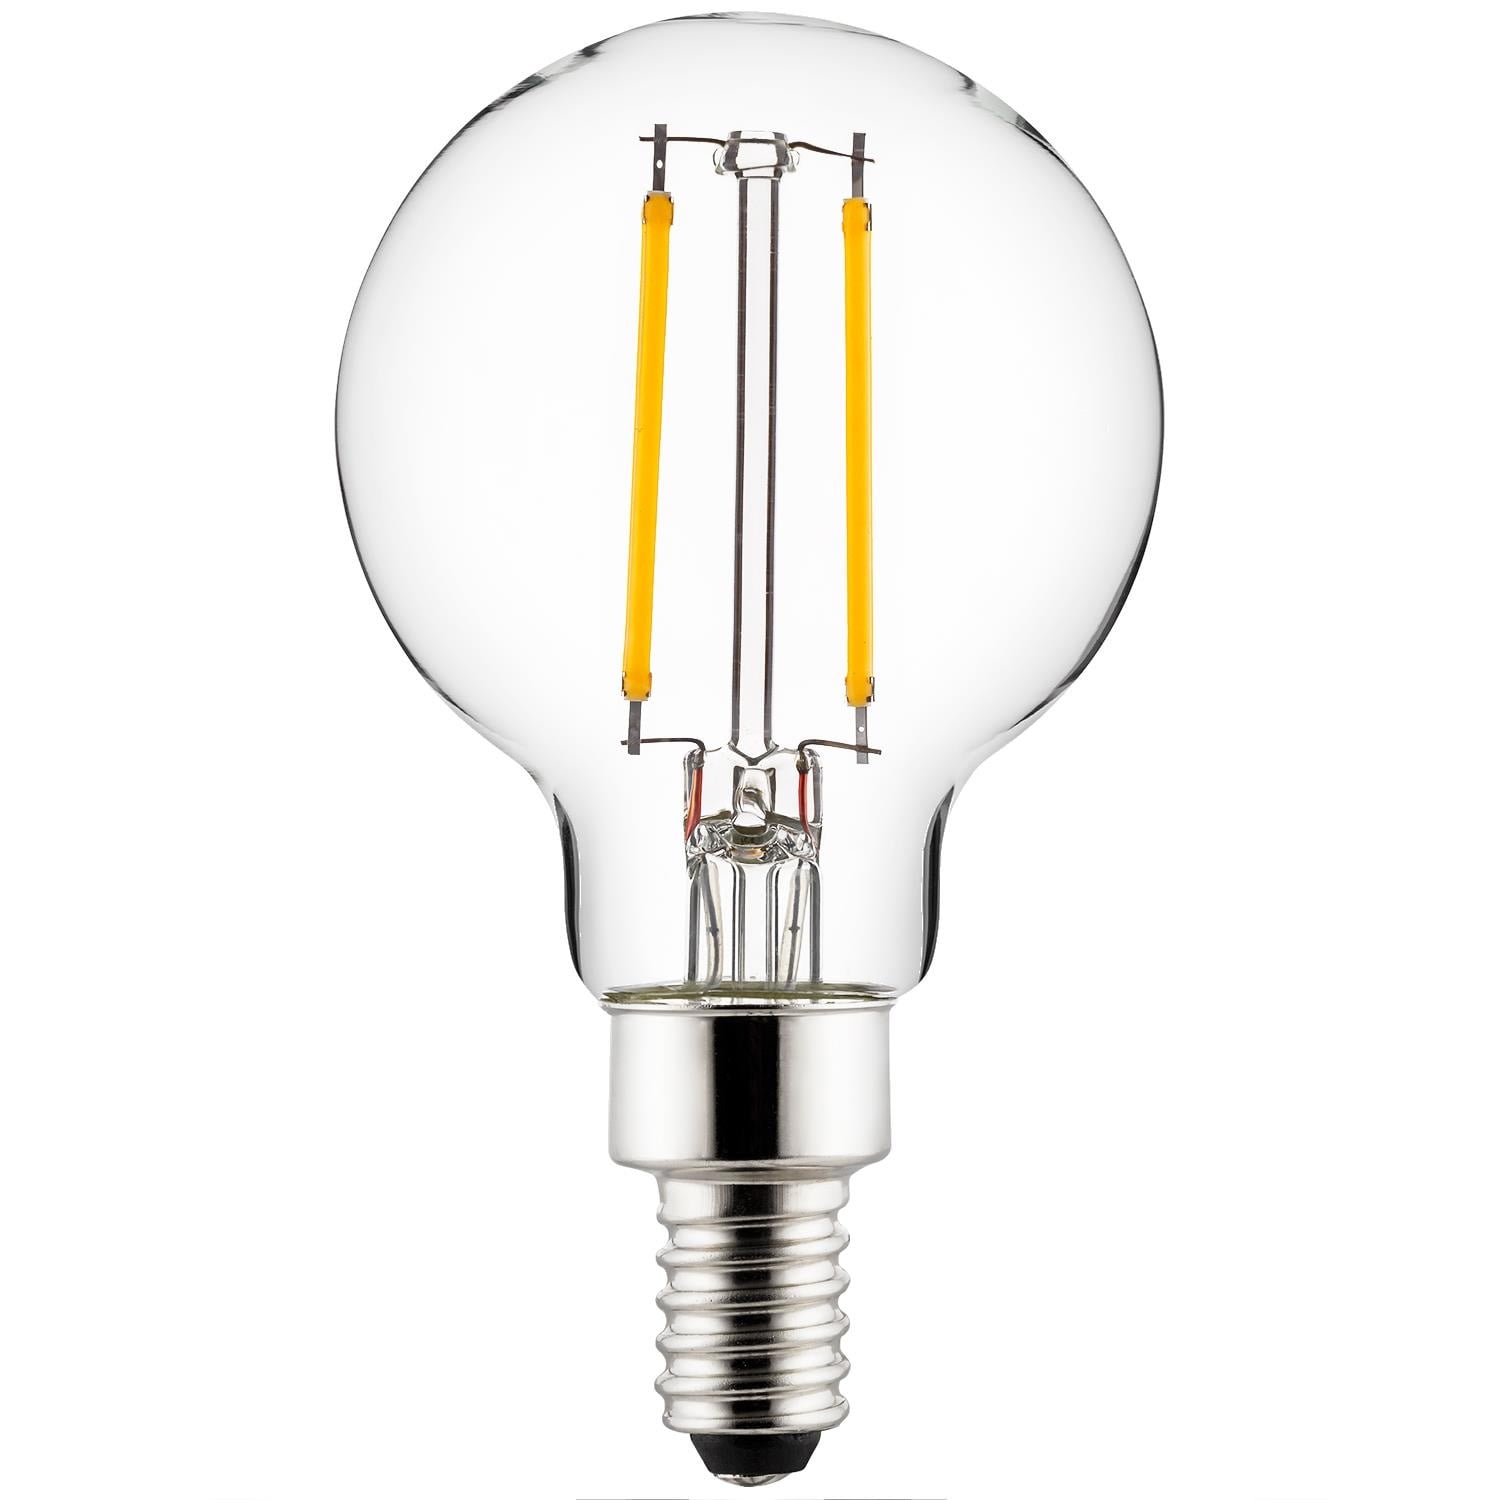 SUNLITE Chandelier Flame bulb 60w 130v Candelabra Base Clear incandescent lamp 